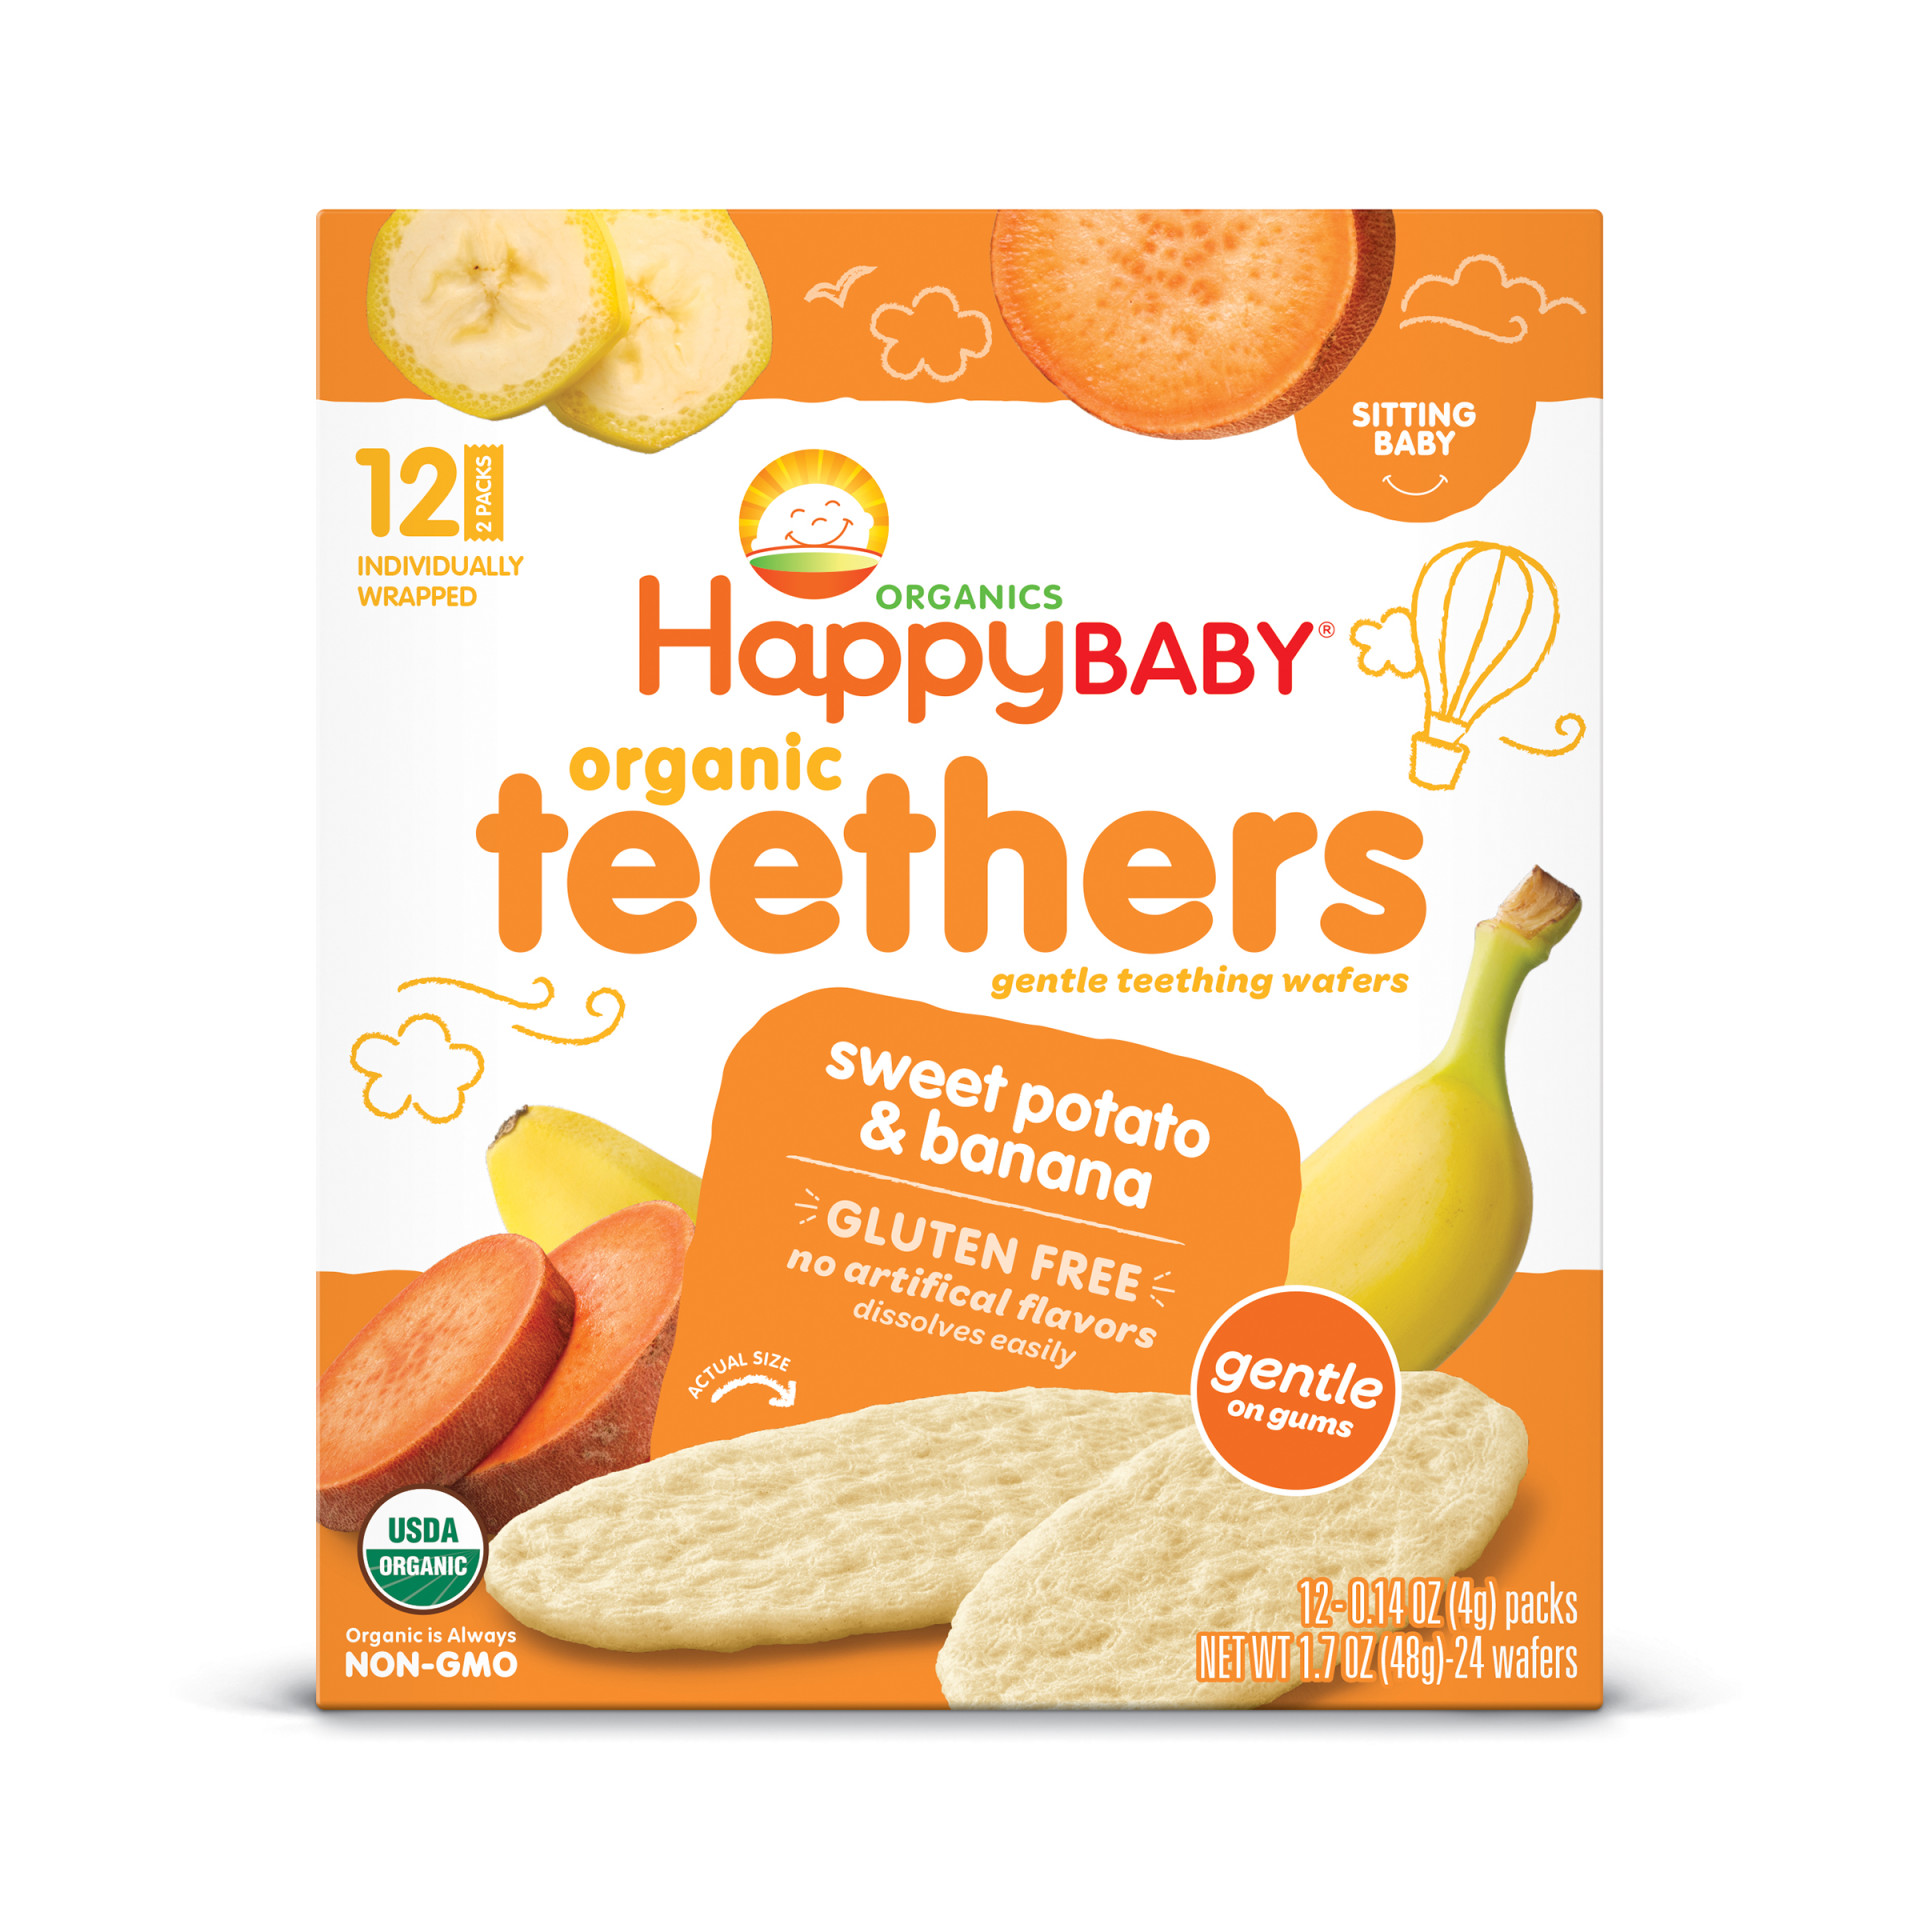 Sweet Potato & Banana Teething Wafers | Happy Baby Organics